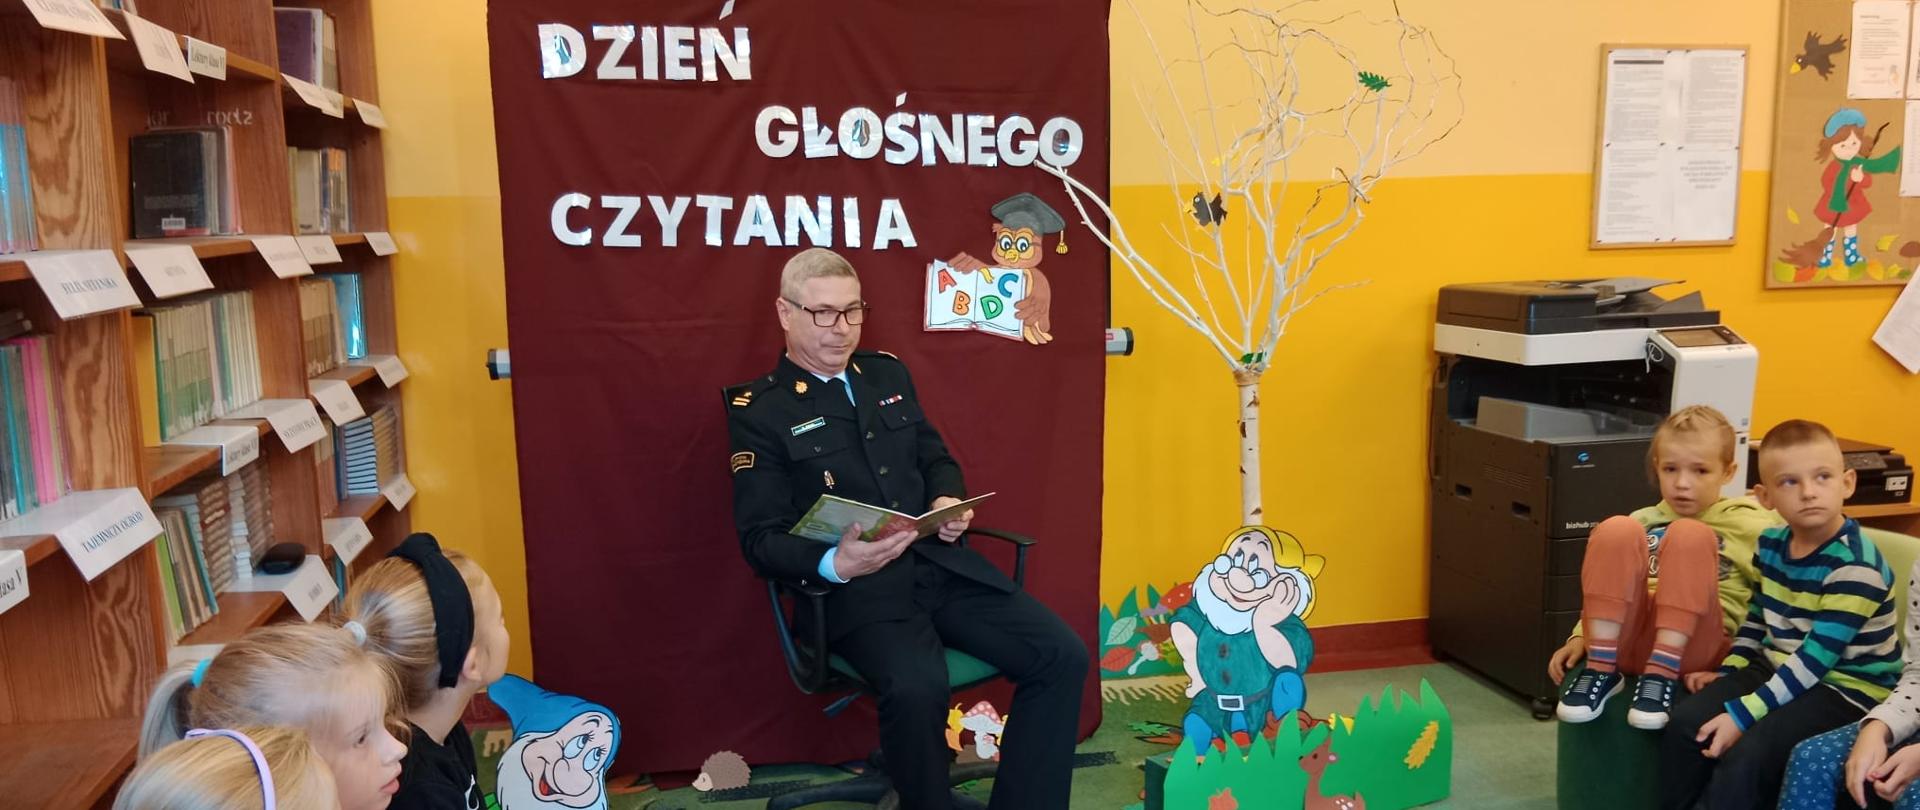 Na zdjęciu widać strażaka ubranego w mundur wyjściowy, trzyma książkę i czyta dzieciom.